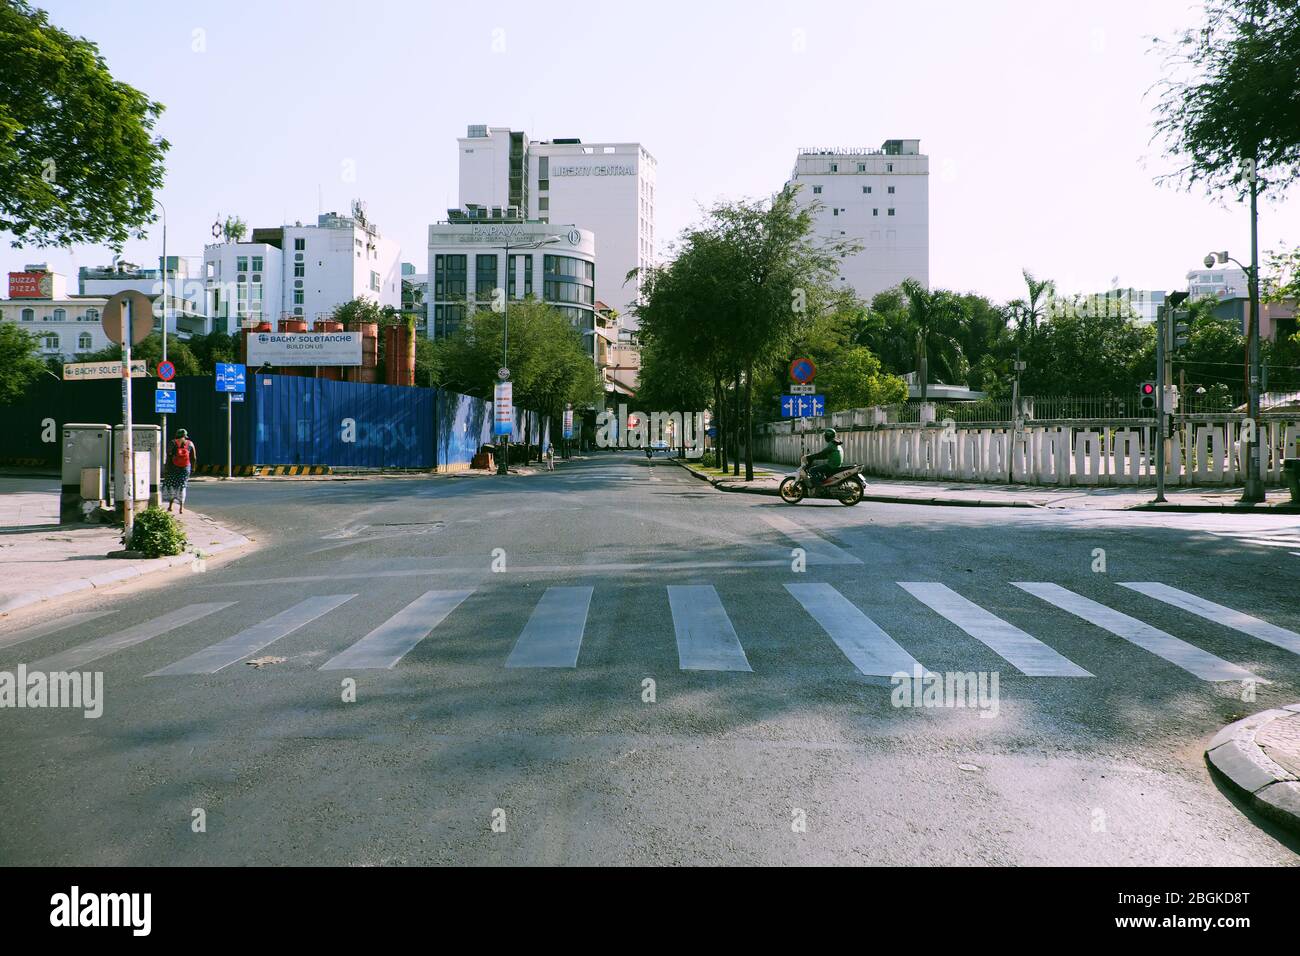 HO CHI MINH STADT, VIET NAM, einsame Straße, ruhige Szene im zentralen Bereich der Großstadt auf Anfrage Limit bewegen sich in Pandemie, nur wenige Fahrzeug bewegen Stockfoto